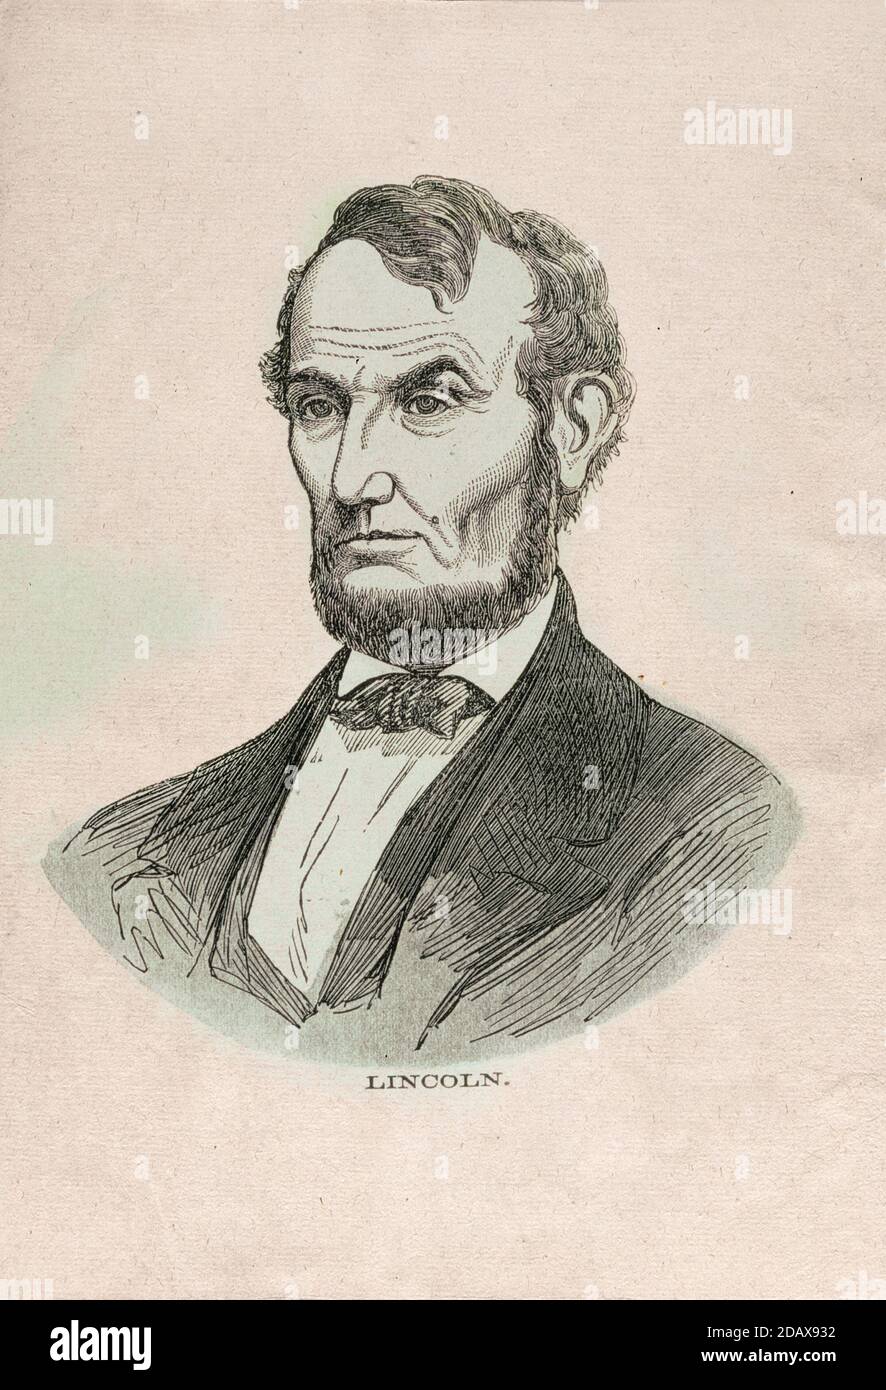 Gravure du président Abraham Lincoln. Abraham Lincoln (1809 – 1865) était un homme d'État et un avocat américain qui a servi comme 16e président de l'Uni Banque D'Images